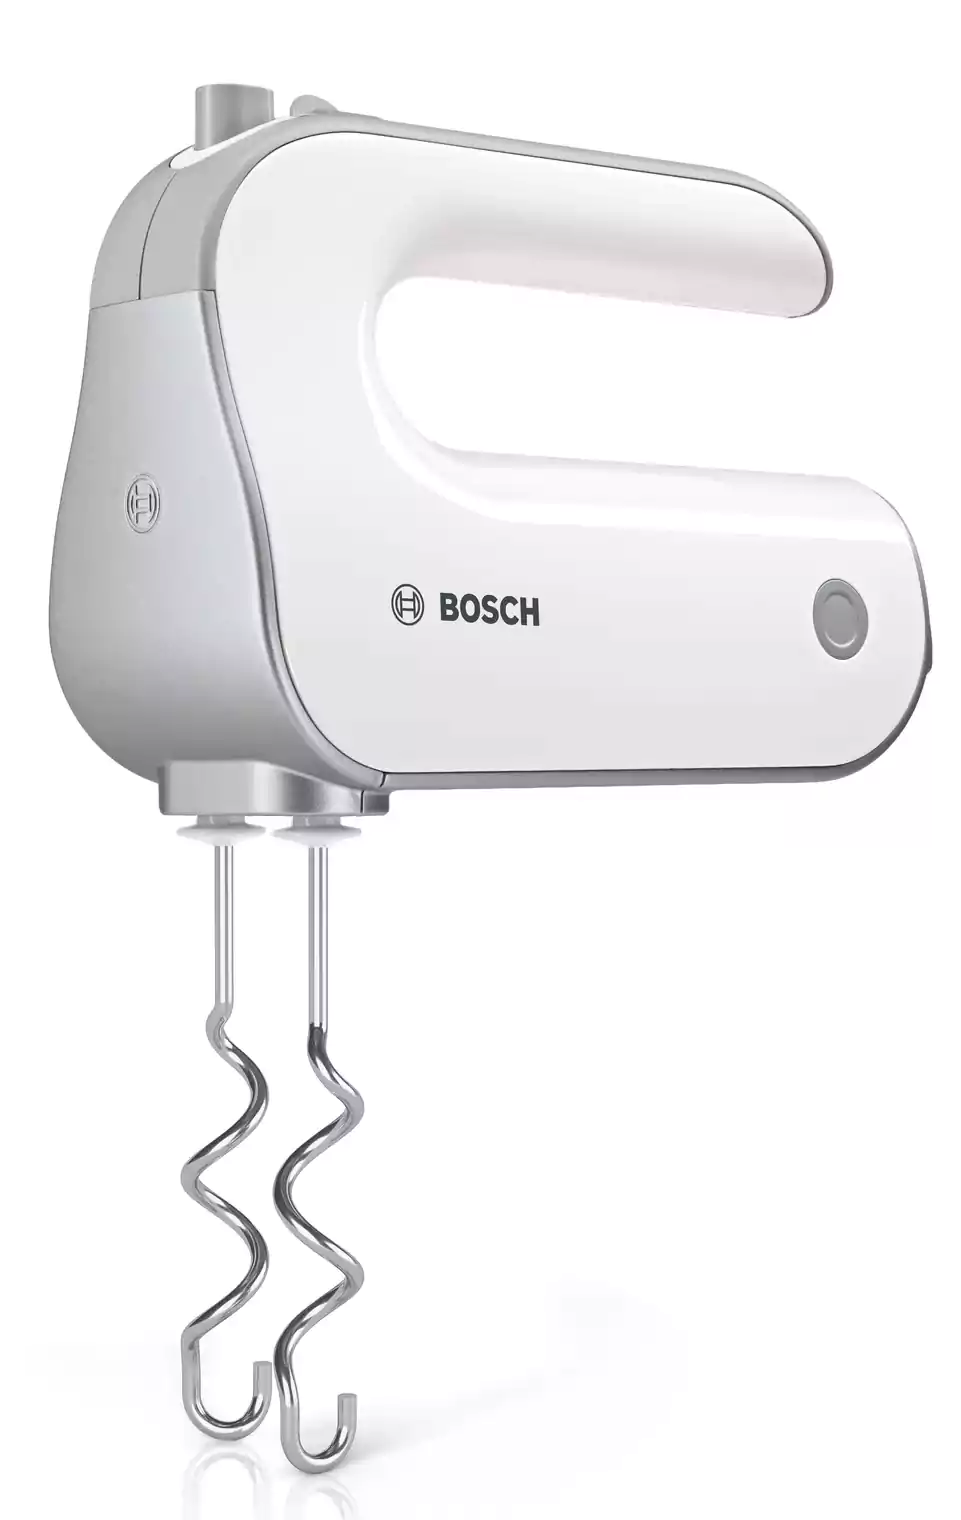 Bosch Hand Mixer, 500 Watt, 5 Speeds, With Attachments, White, MFQ4080